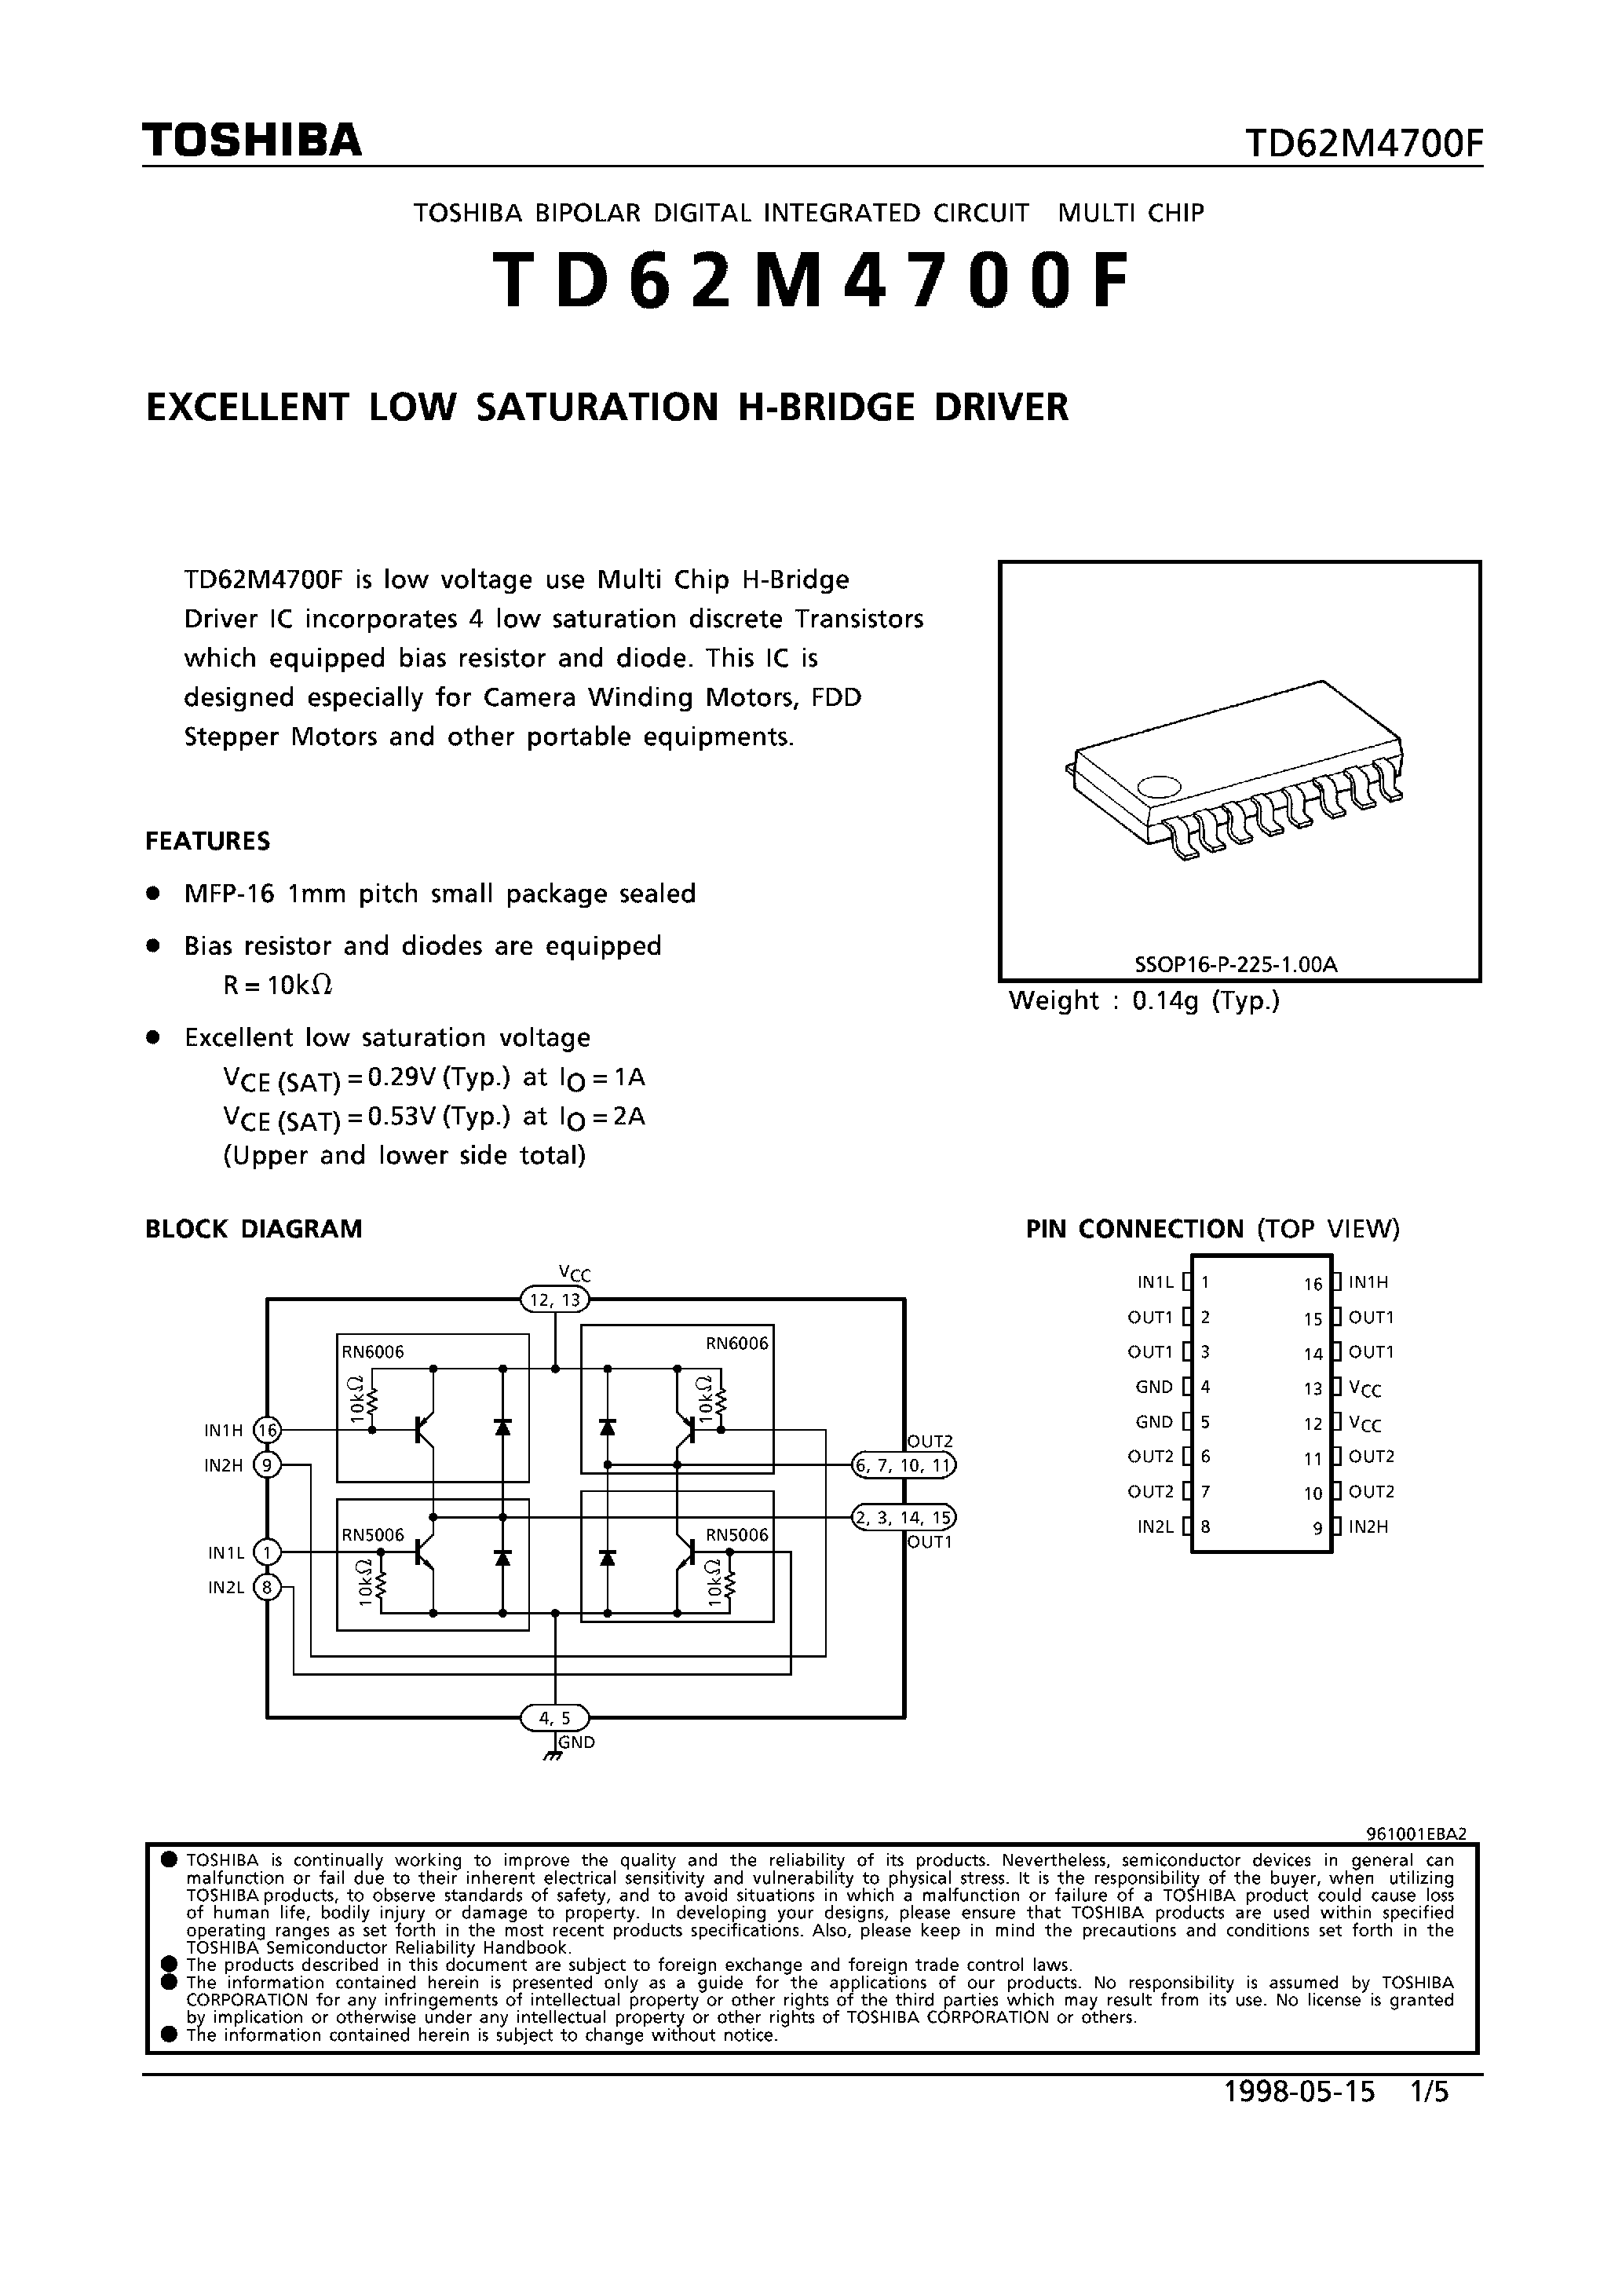 Datasheet TD62M4700F - EXCELLENT LOW SATURATION H-BRIDGE DRIVER page 1